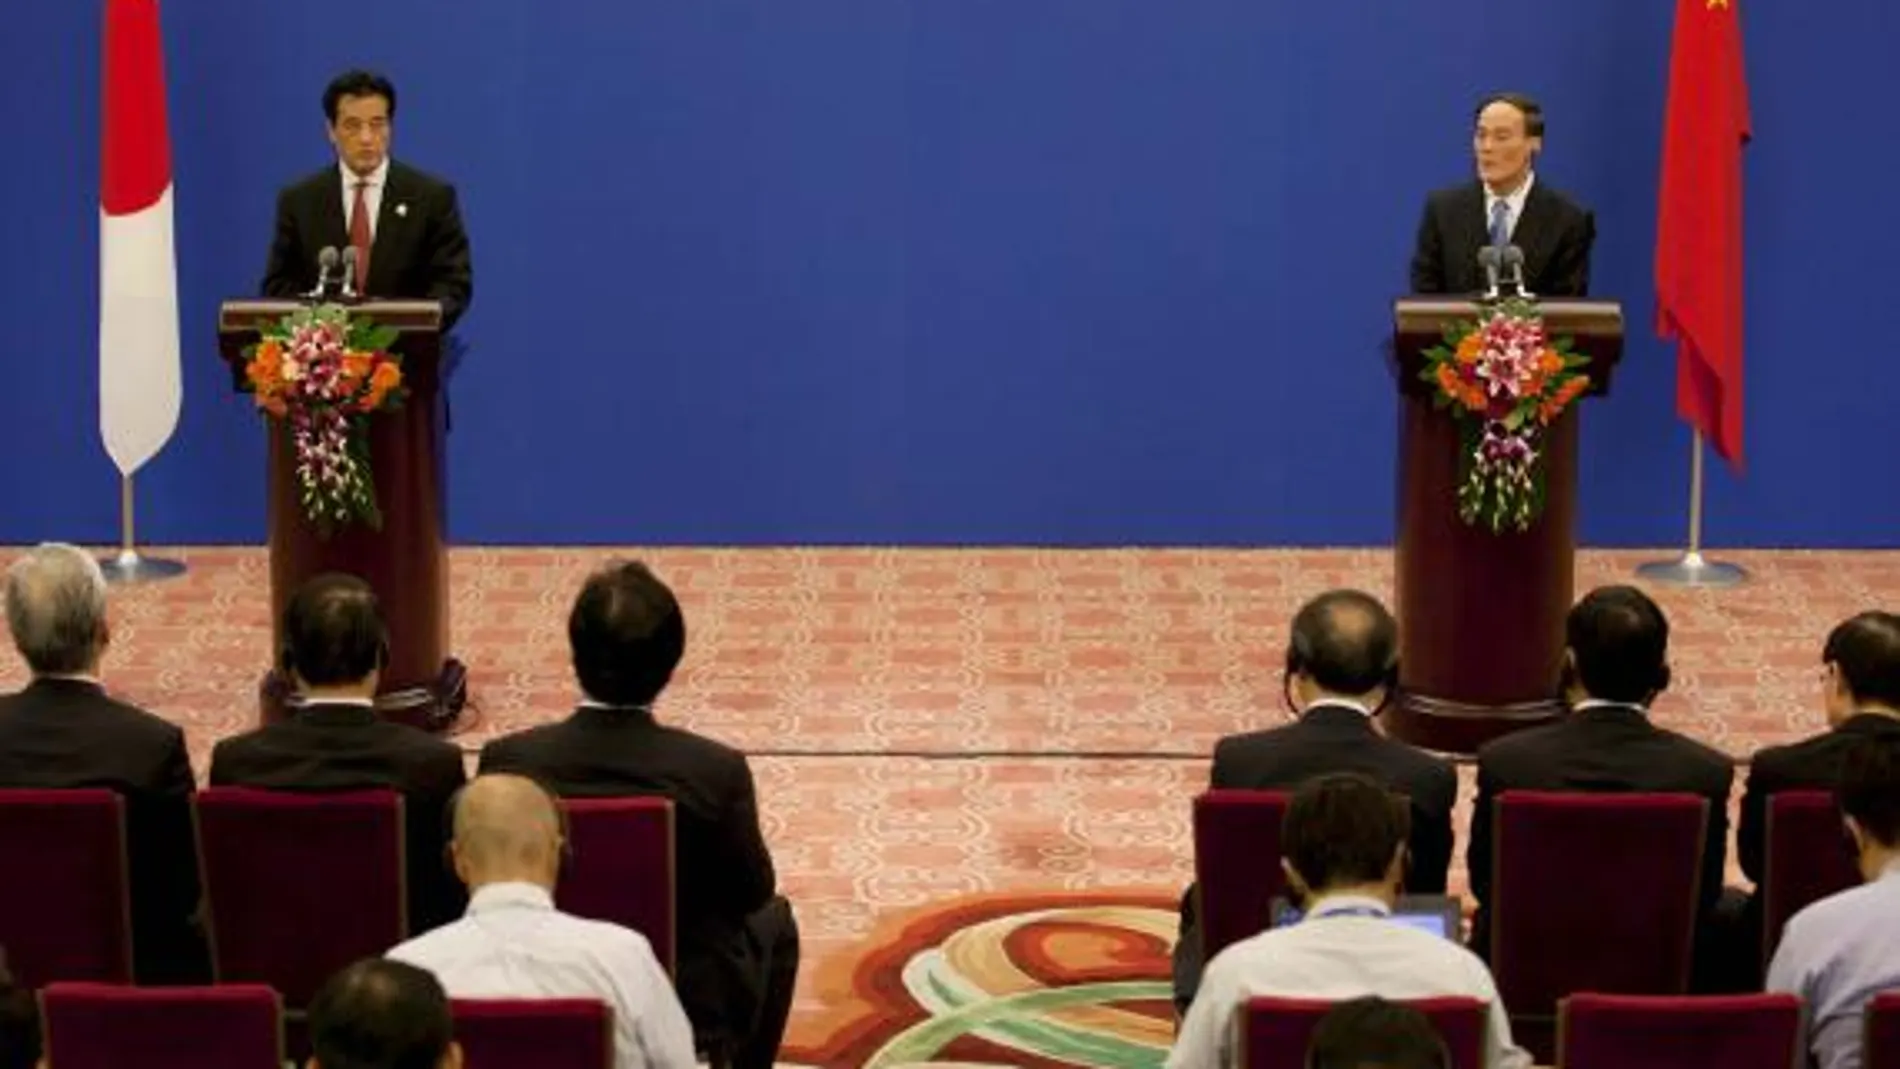 El viceprimer ministro chino Wang Qishan (d ) y el ministro japonés de Relaciones Exteriores, Okada Katsuya (i), durante una rueda de prensa realizada al término del tercer diálogo económico de alto nivel entre China y Japón